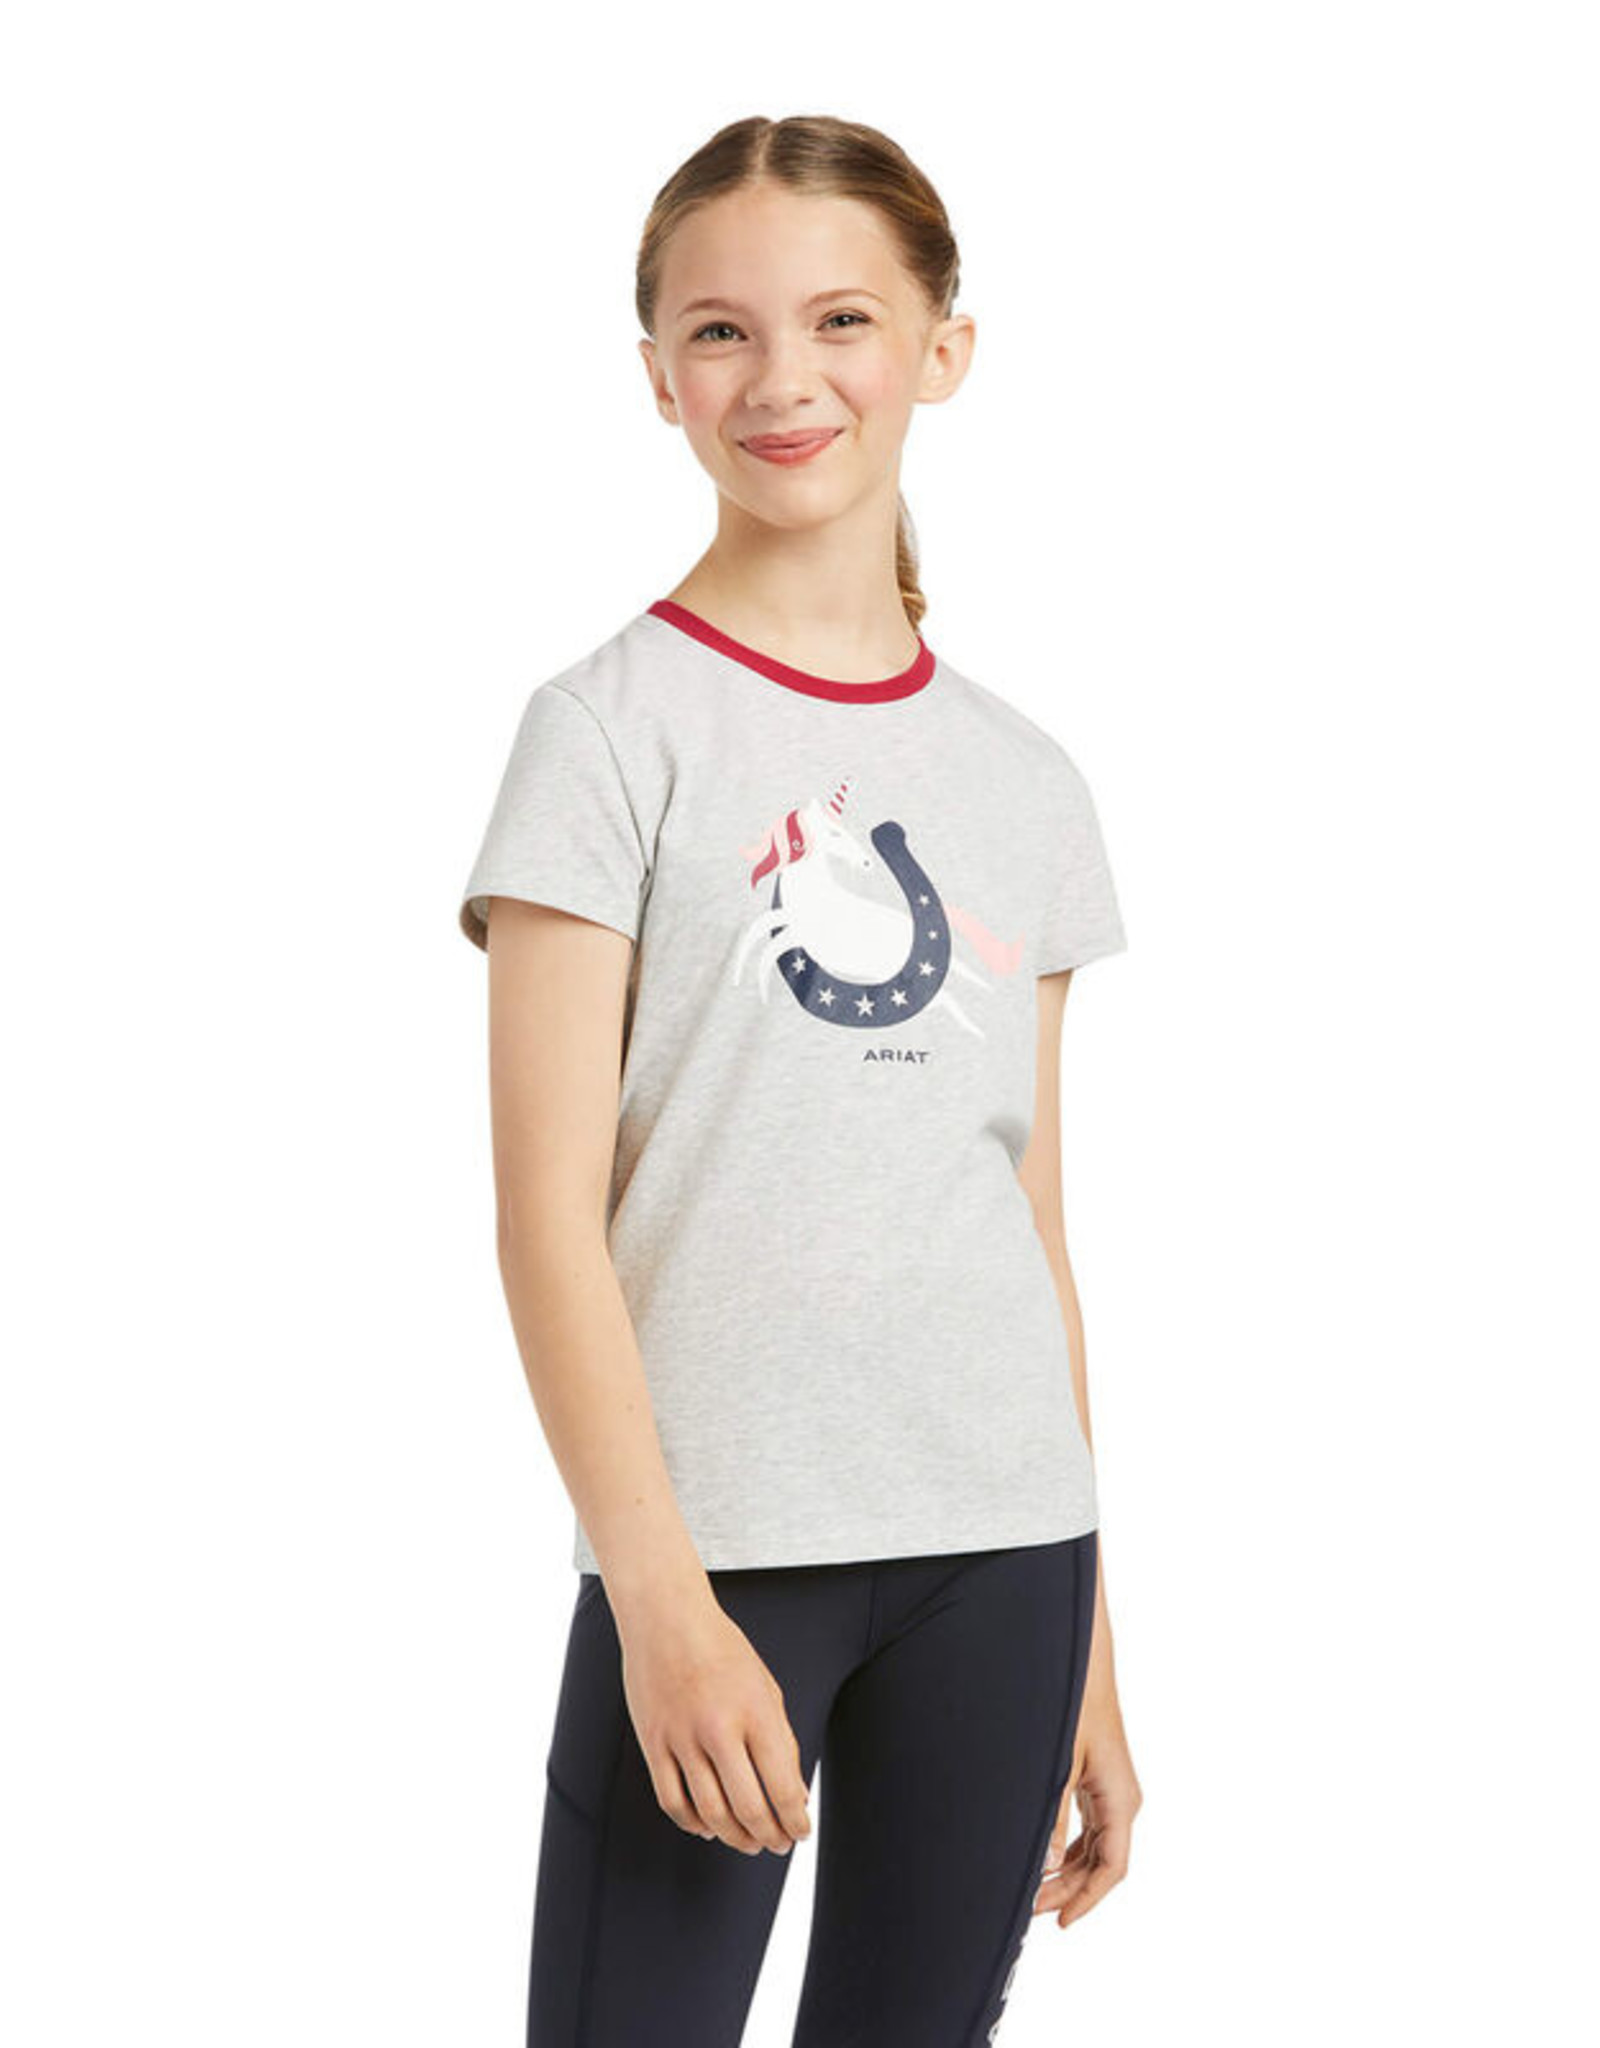 Ariat Kids' Unicorn Moon Shirt